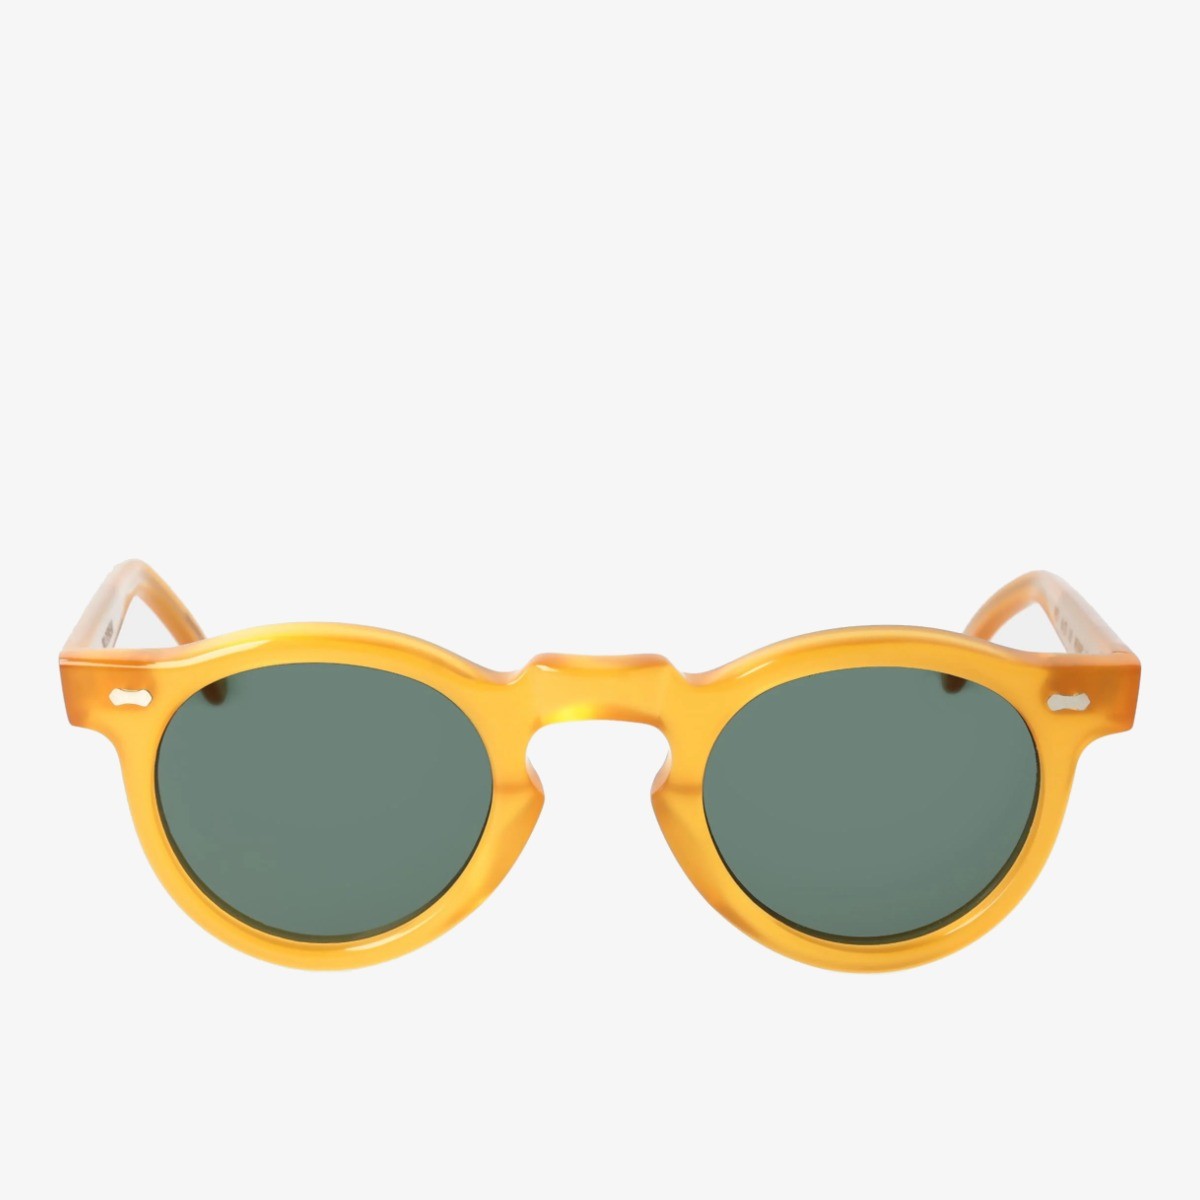 TBD Eyewear Welt saulės akiniai geltonais rėmeliais ir žaliais lęšiais